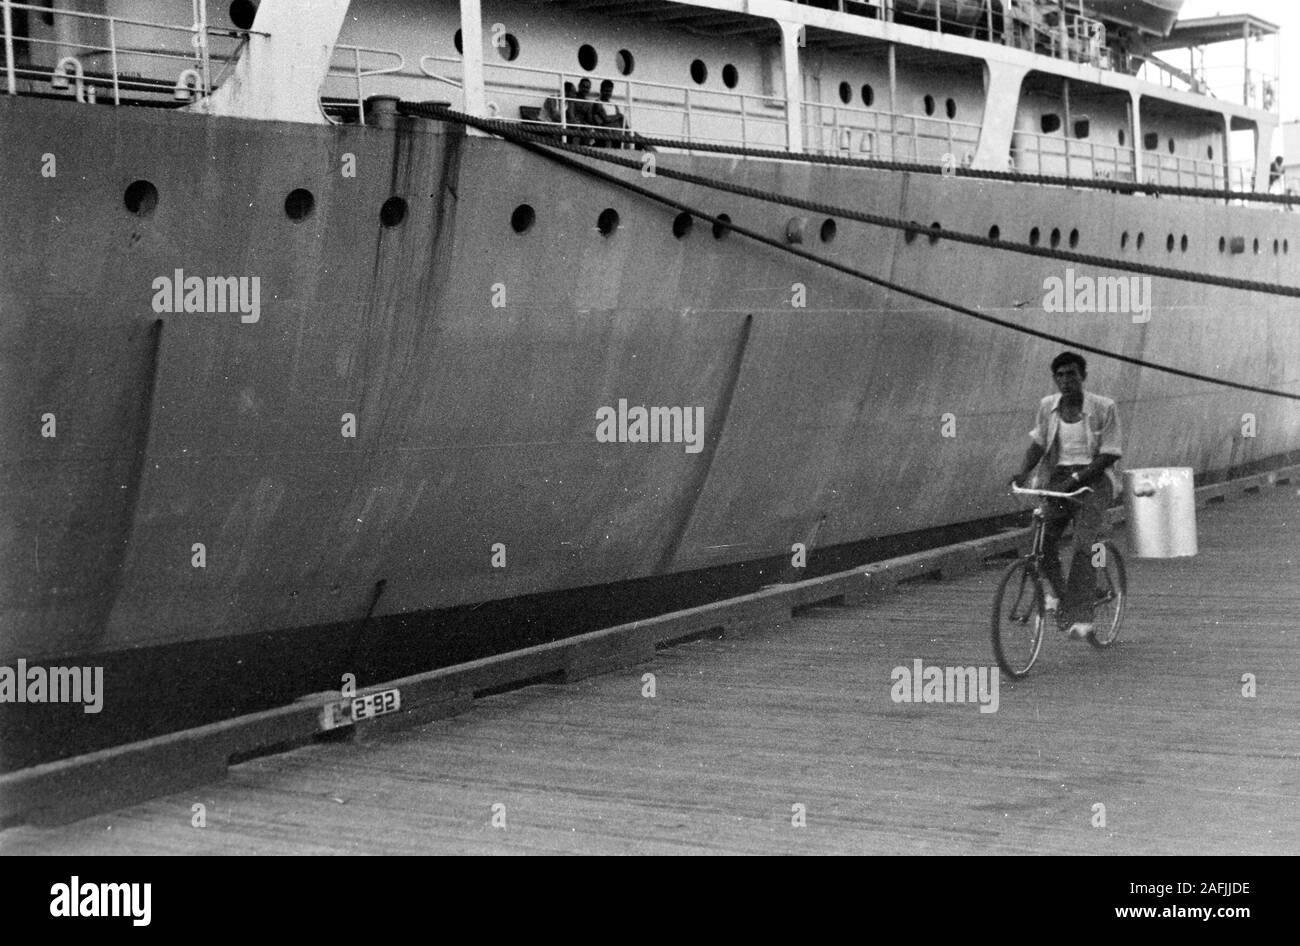 Hafenanlage mit Rafahrer im Hafen von Port Said, Ägypten, 1955. Quay with cyclist at Port Said harbor, Egypt, 1955. Stock Photo